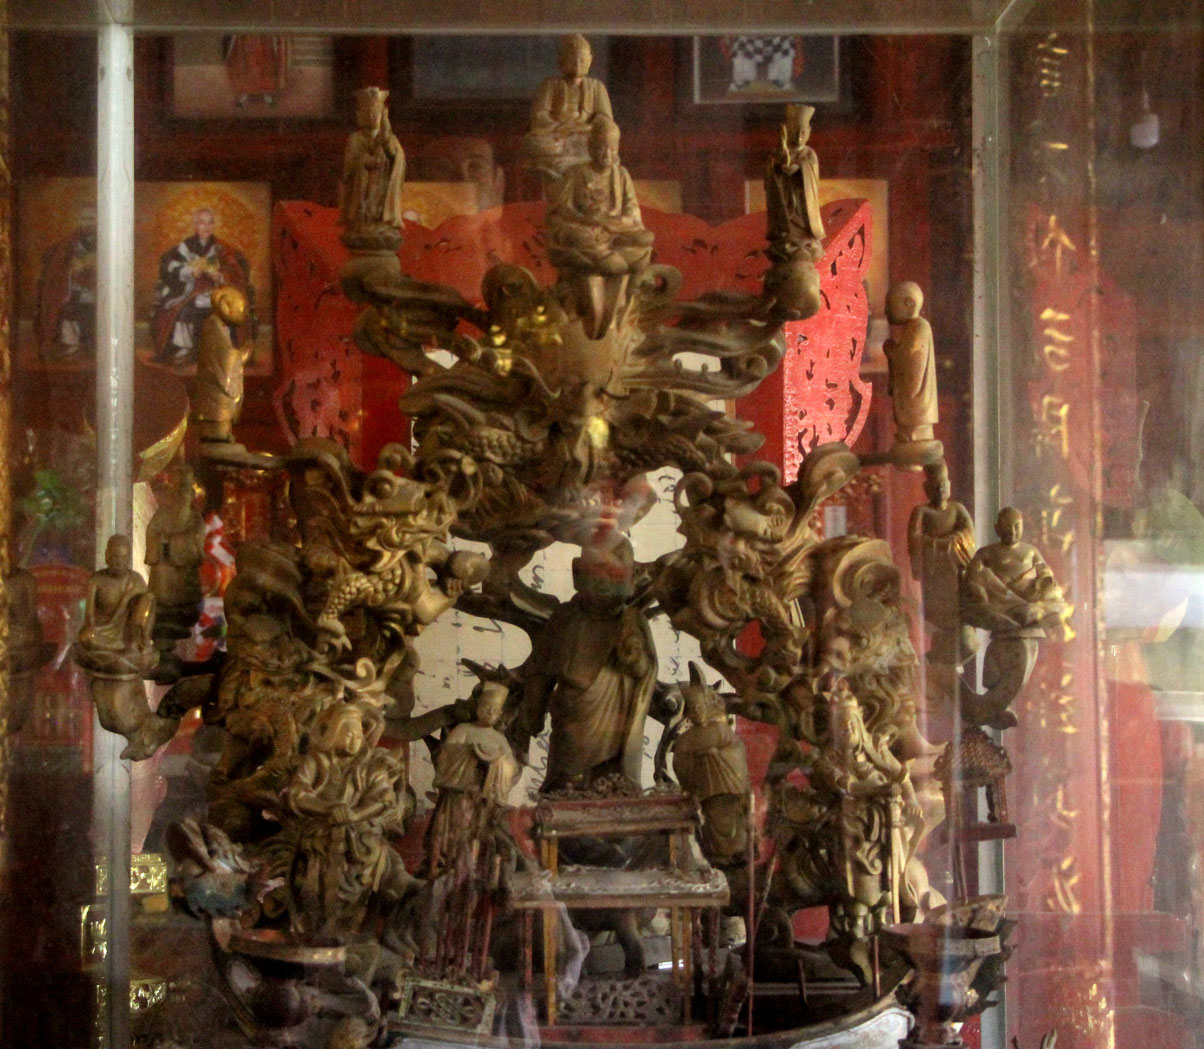 Ngôi chùa cổ ở Long An, nơi buổi đầu Phật giáo xuất hiện ở Nam bộ, vua Bảo Đại ban bộ kinh độc đáo - Ảnh 4.